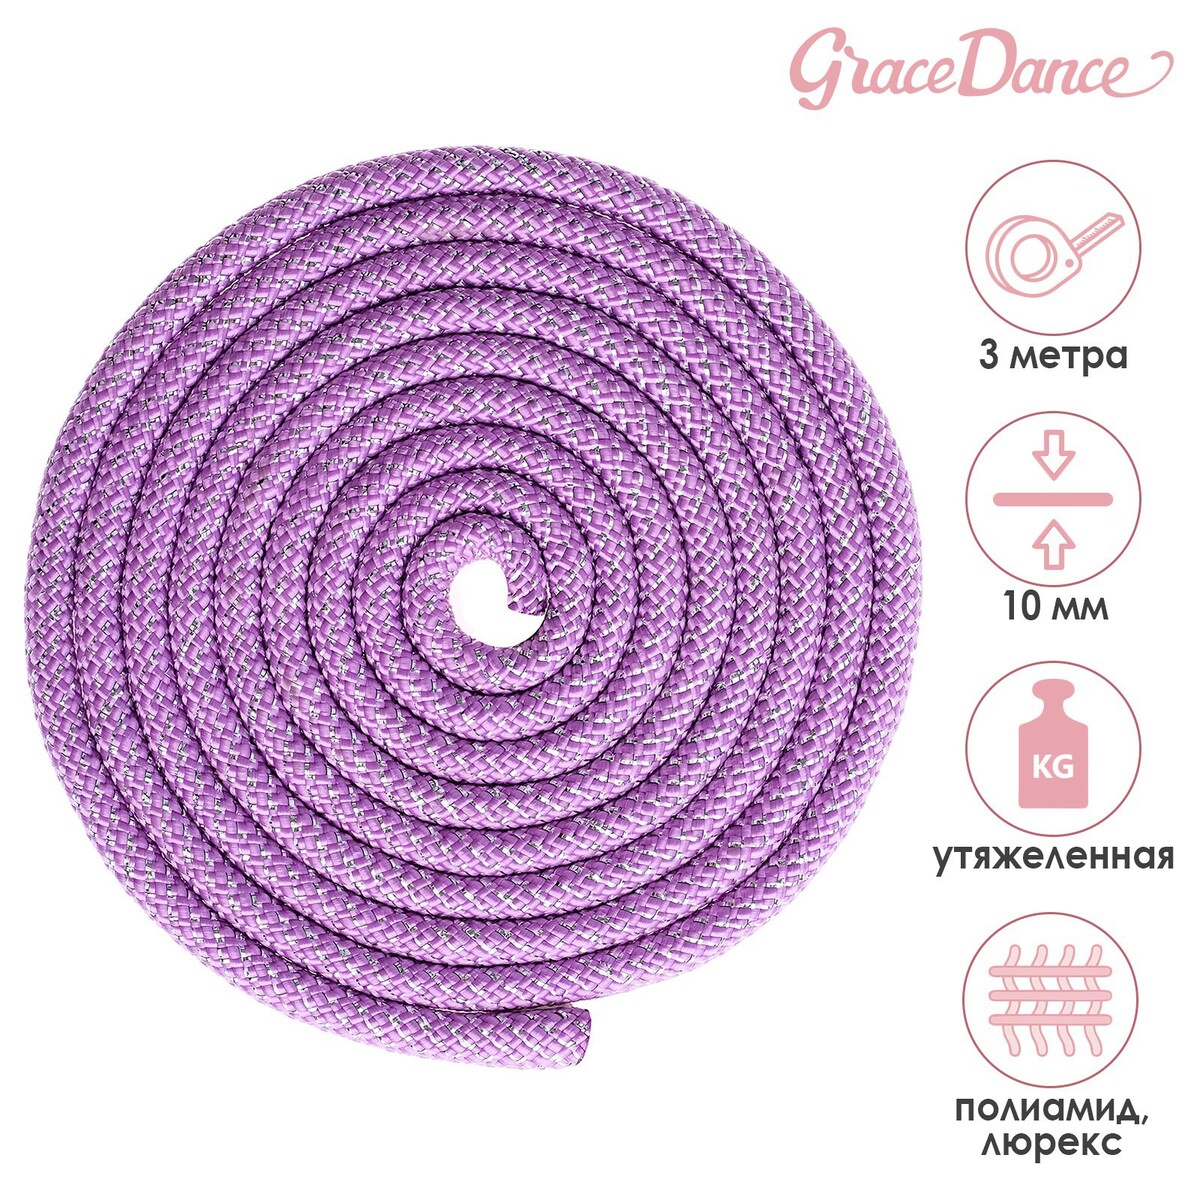 фото Скакалка гимнастическая утяжеленная grace dance, с люрексом, 3 м, 180 г, цвет сиреневый/серебристый